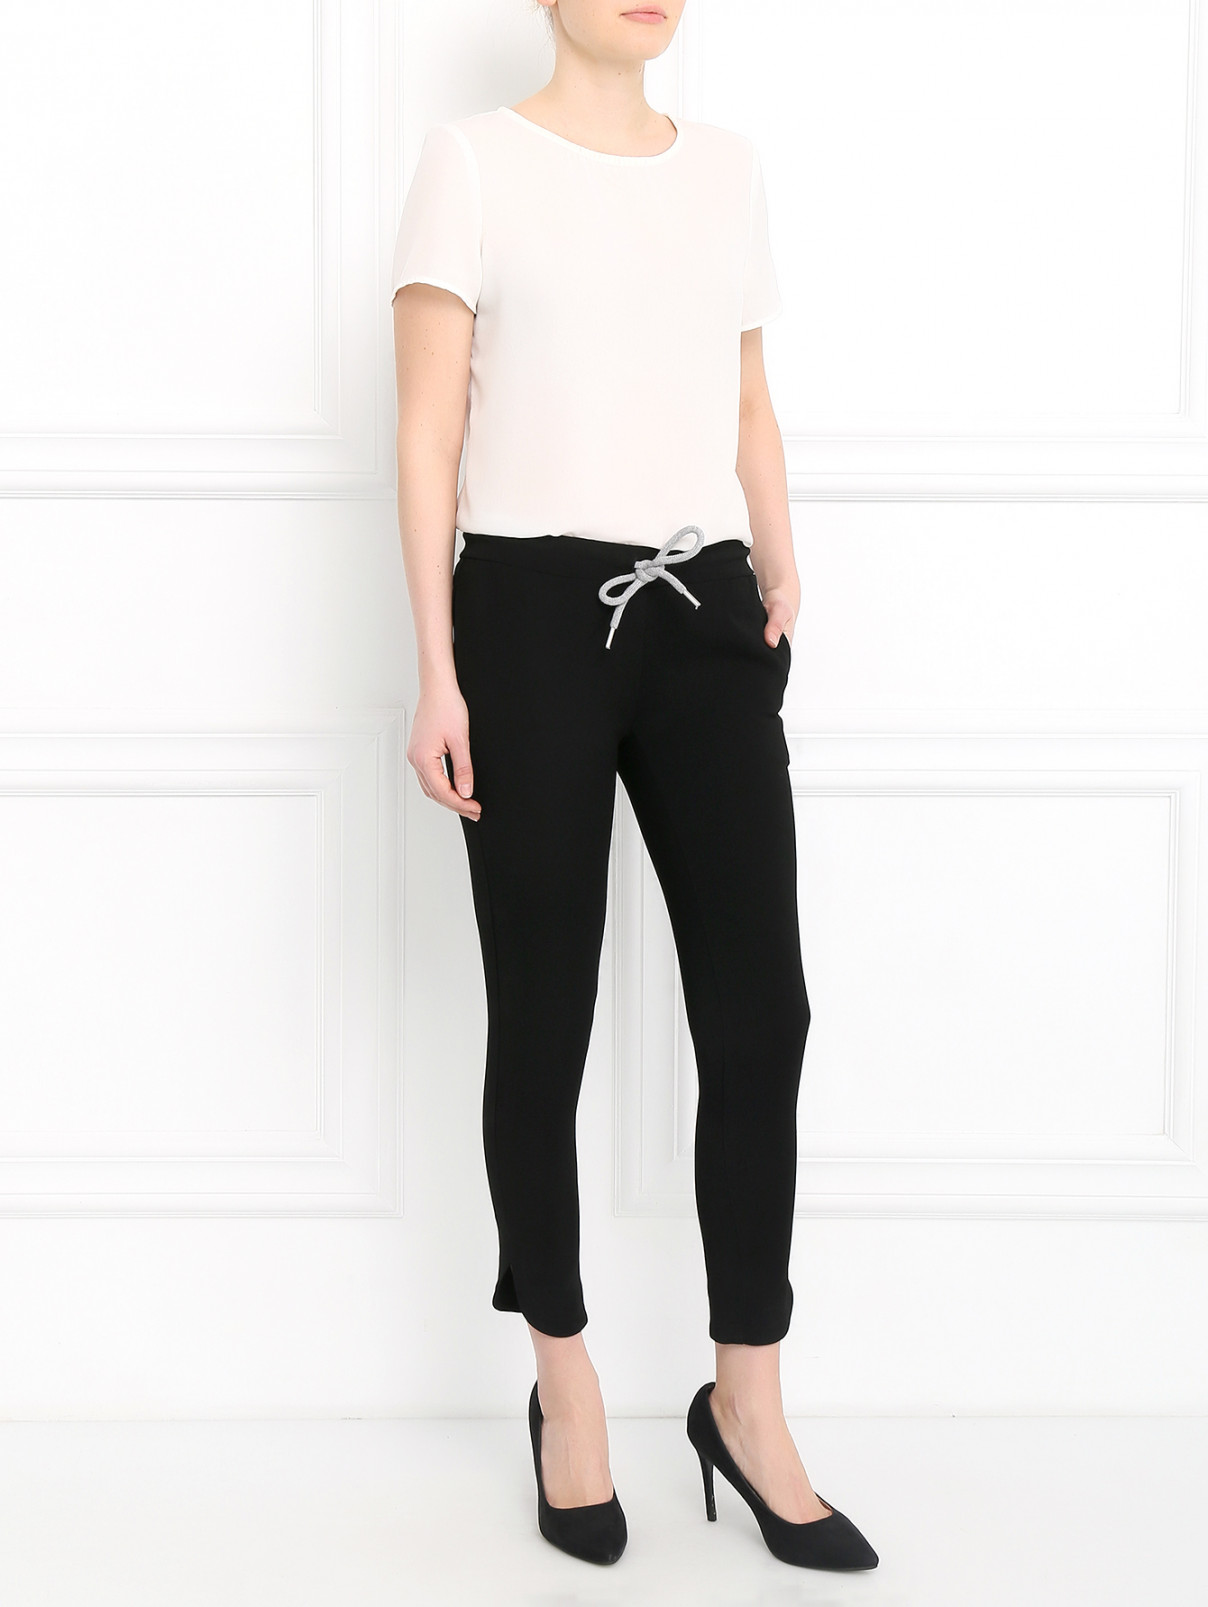 Укороченные брюки на резинке JO NO FUI  –  Модель Общий вид  – Цвет:  Черный